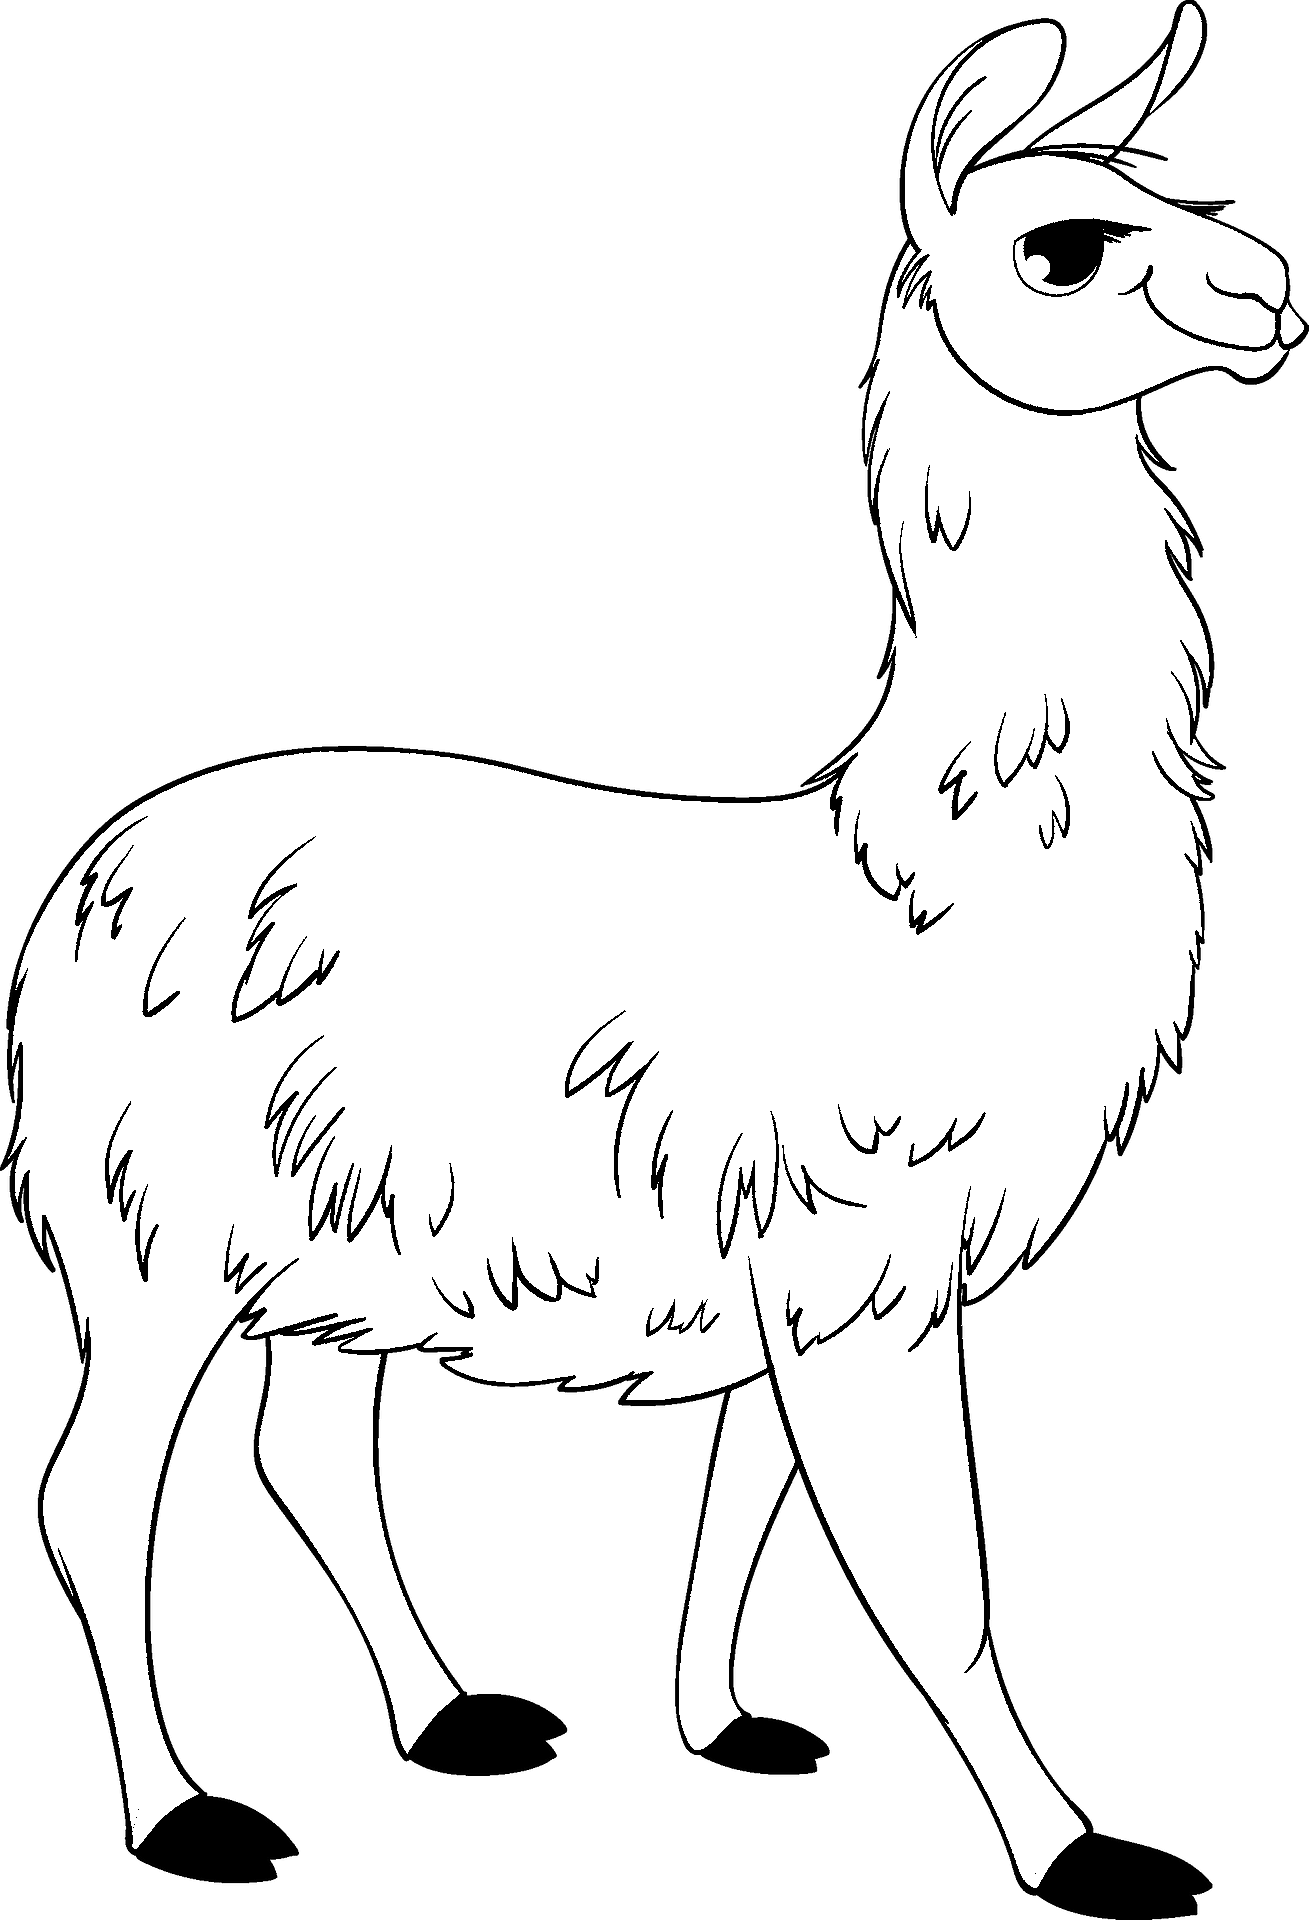 Disegno da colorare di un alpaca